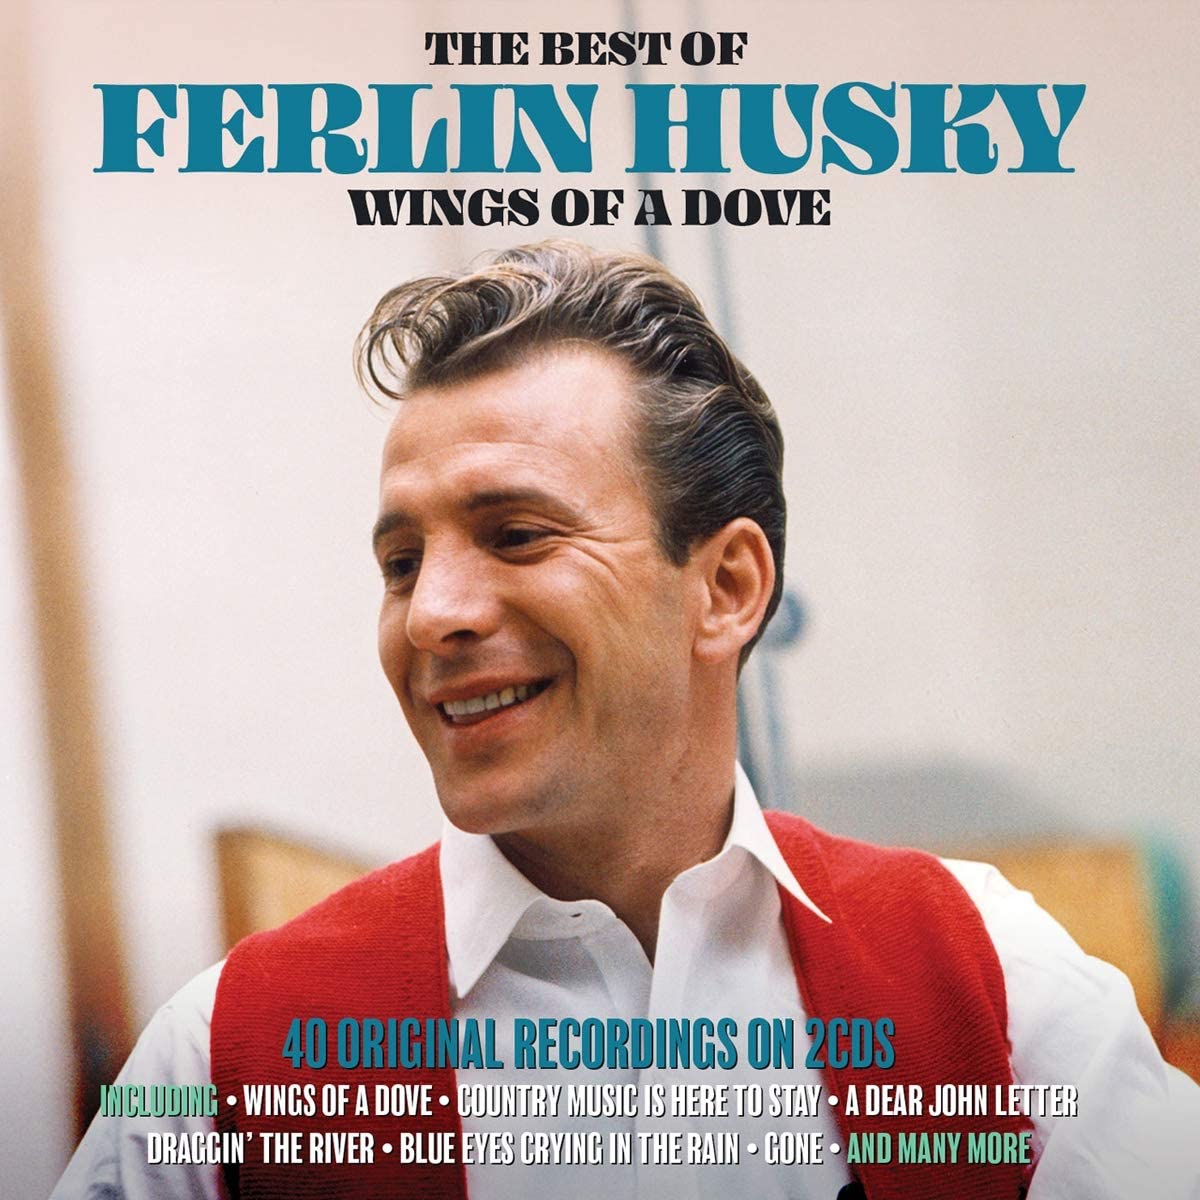 Husky, Ferlin/Wings Of A Dove: The Best Of (2CD) [CD]